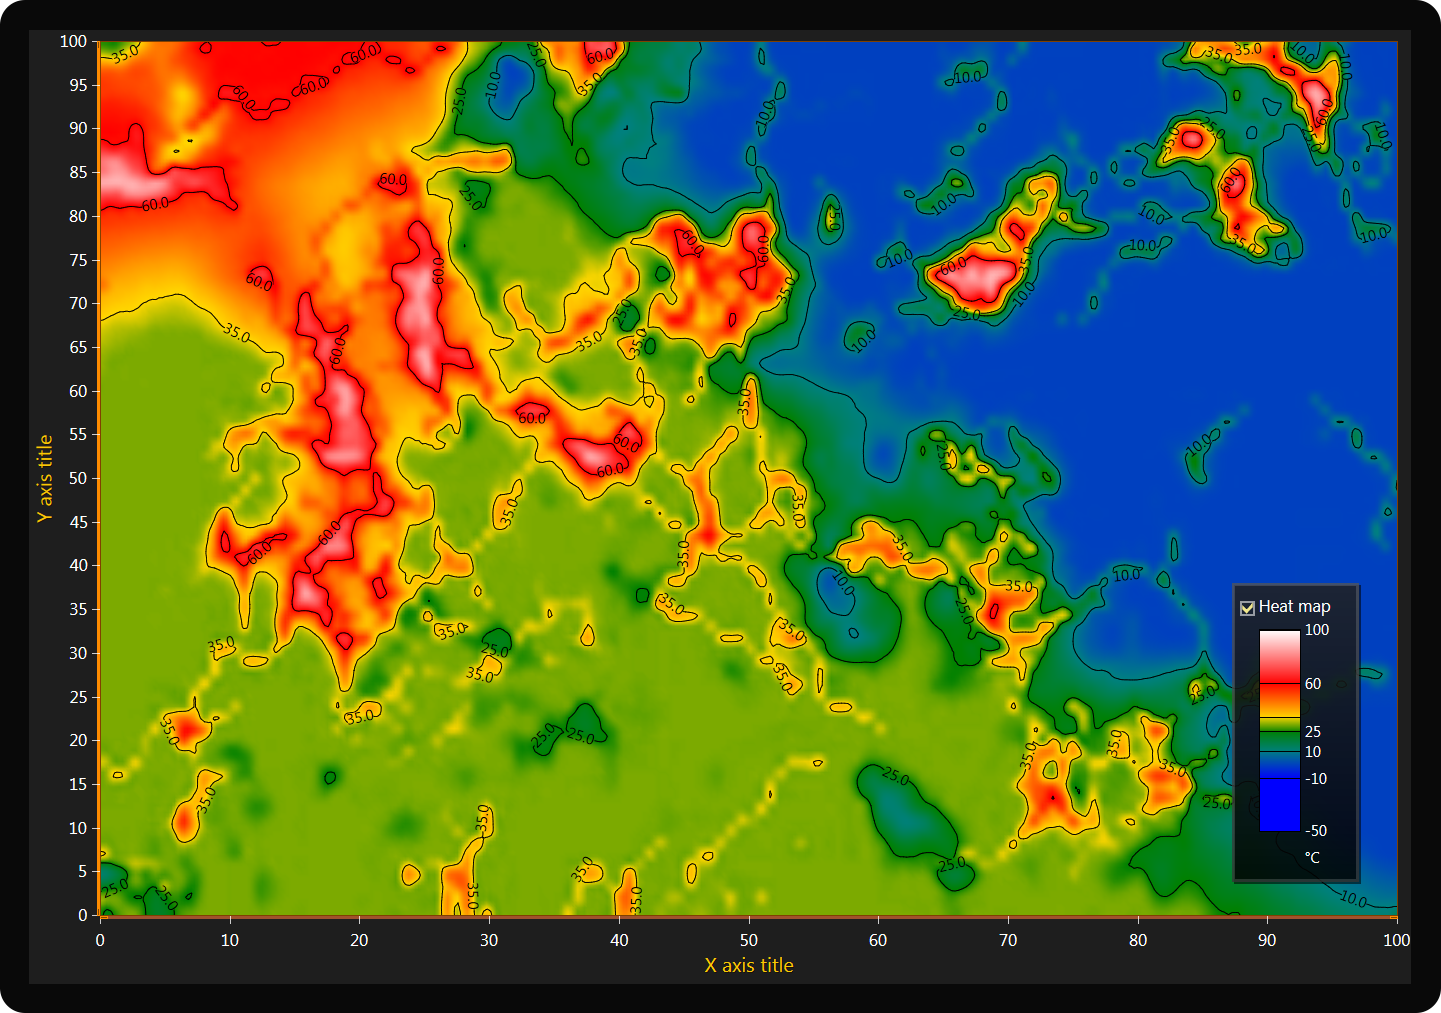 heatmap-chart-gradient-intensity-contours-labels